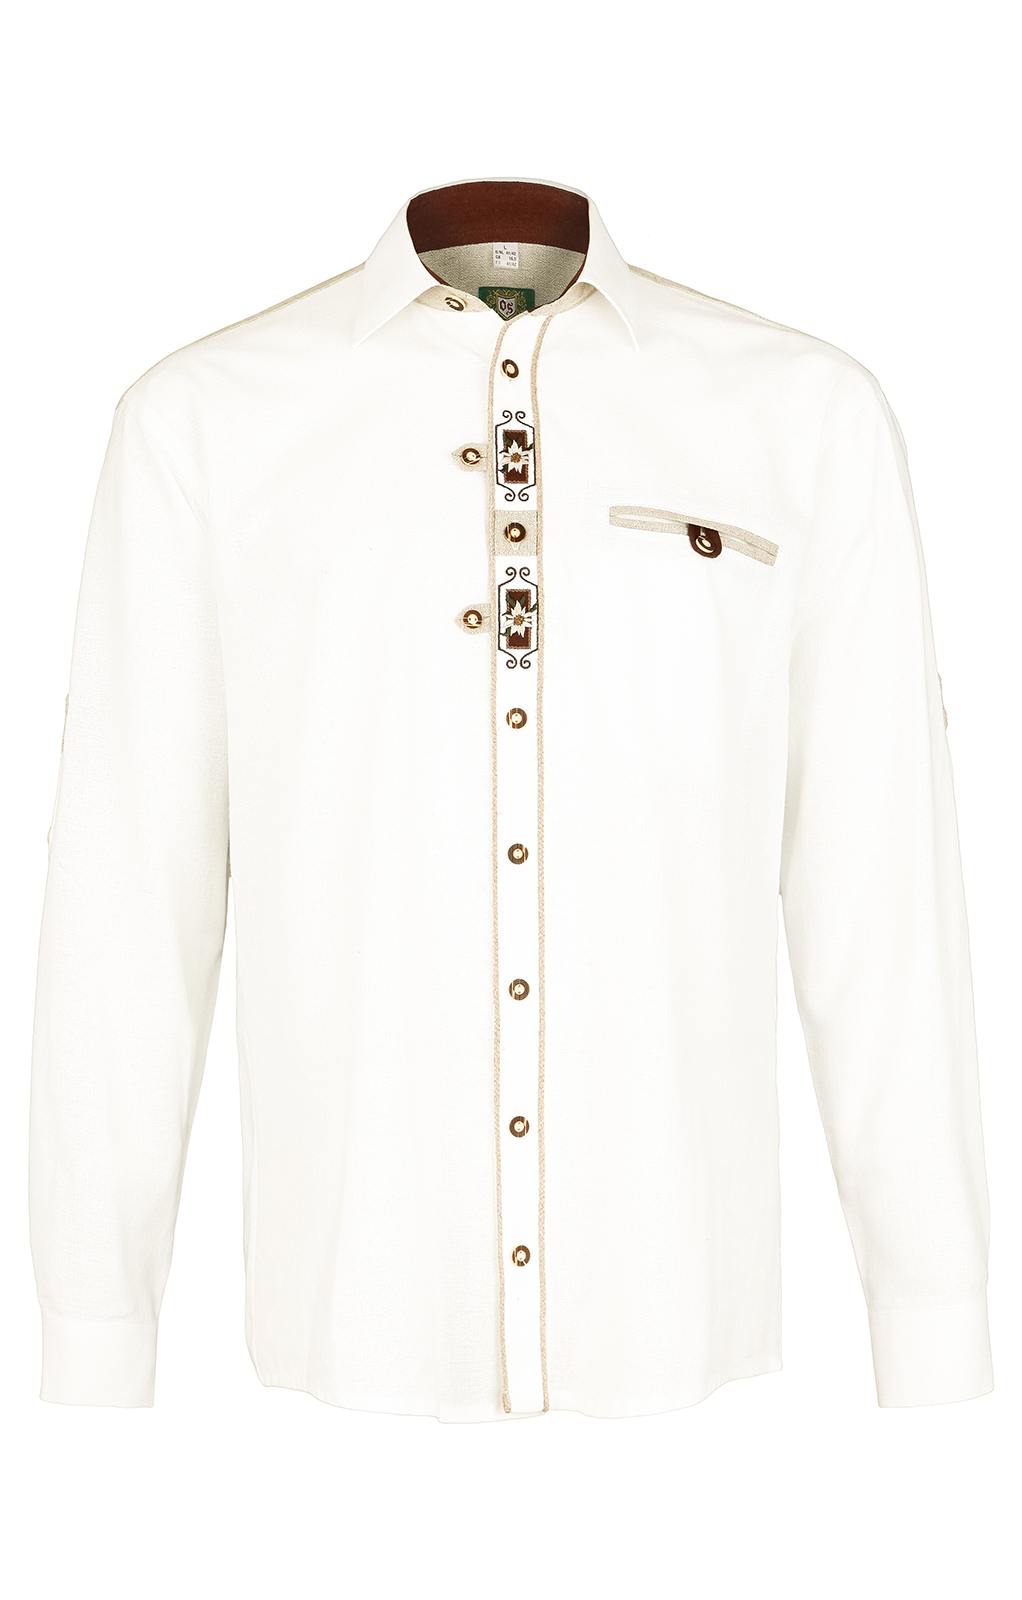 weitere Bilder von German traditional shirt VENDER white